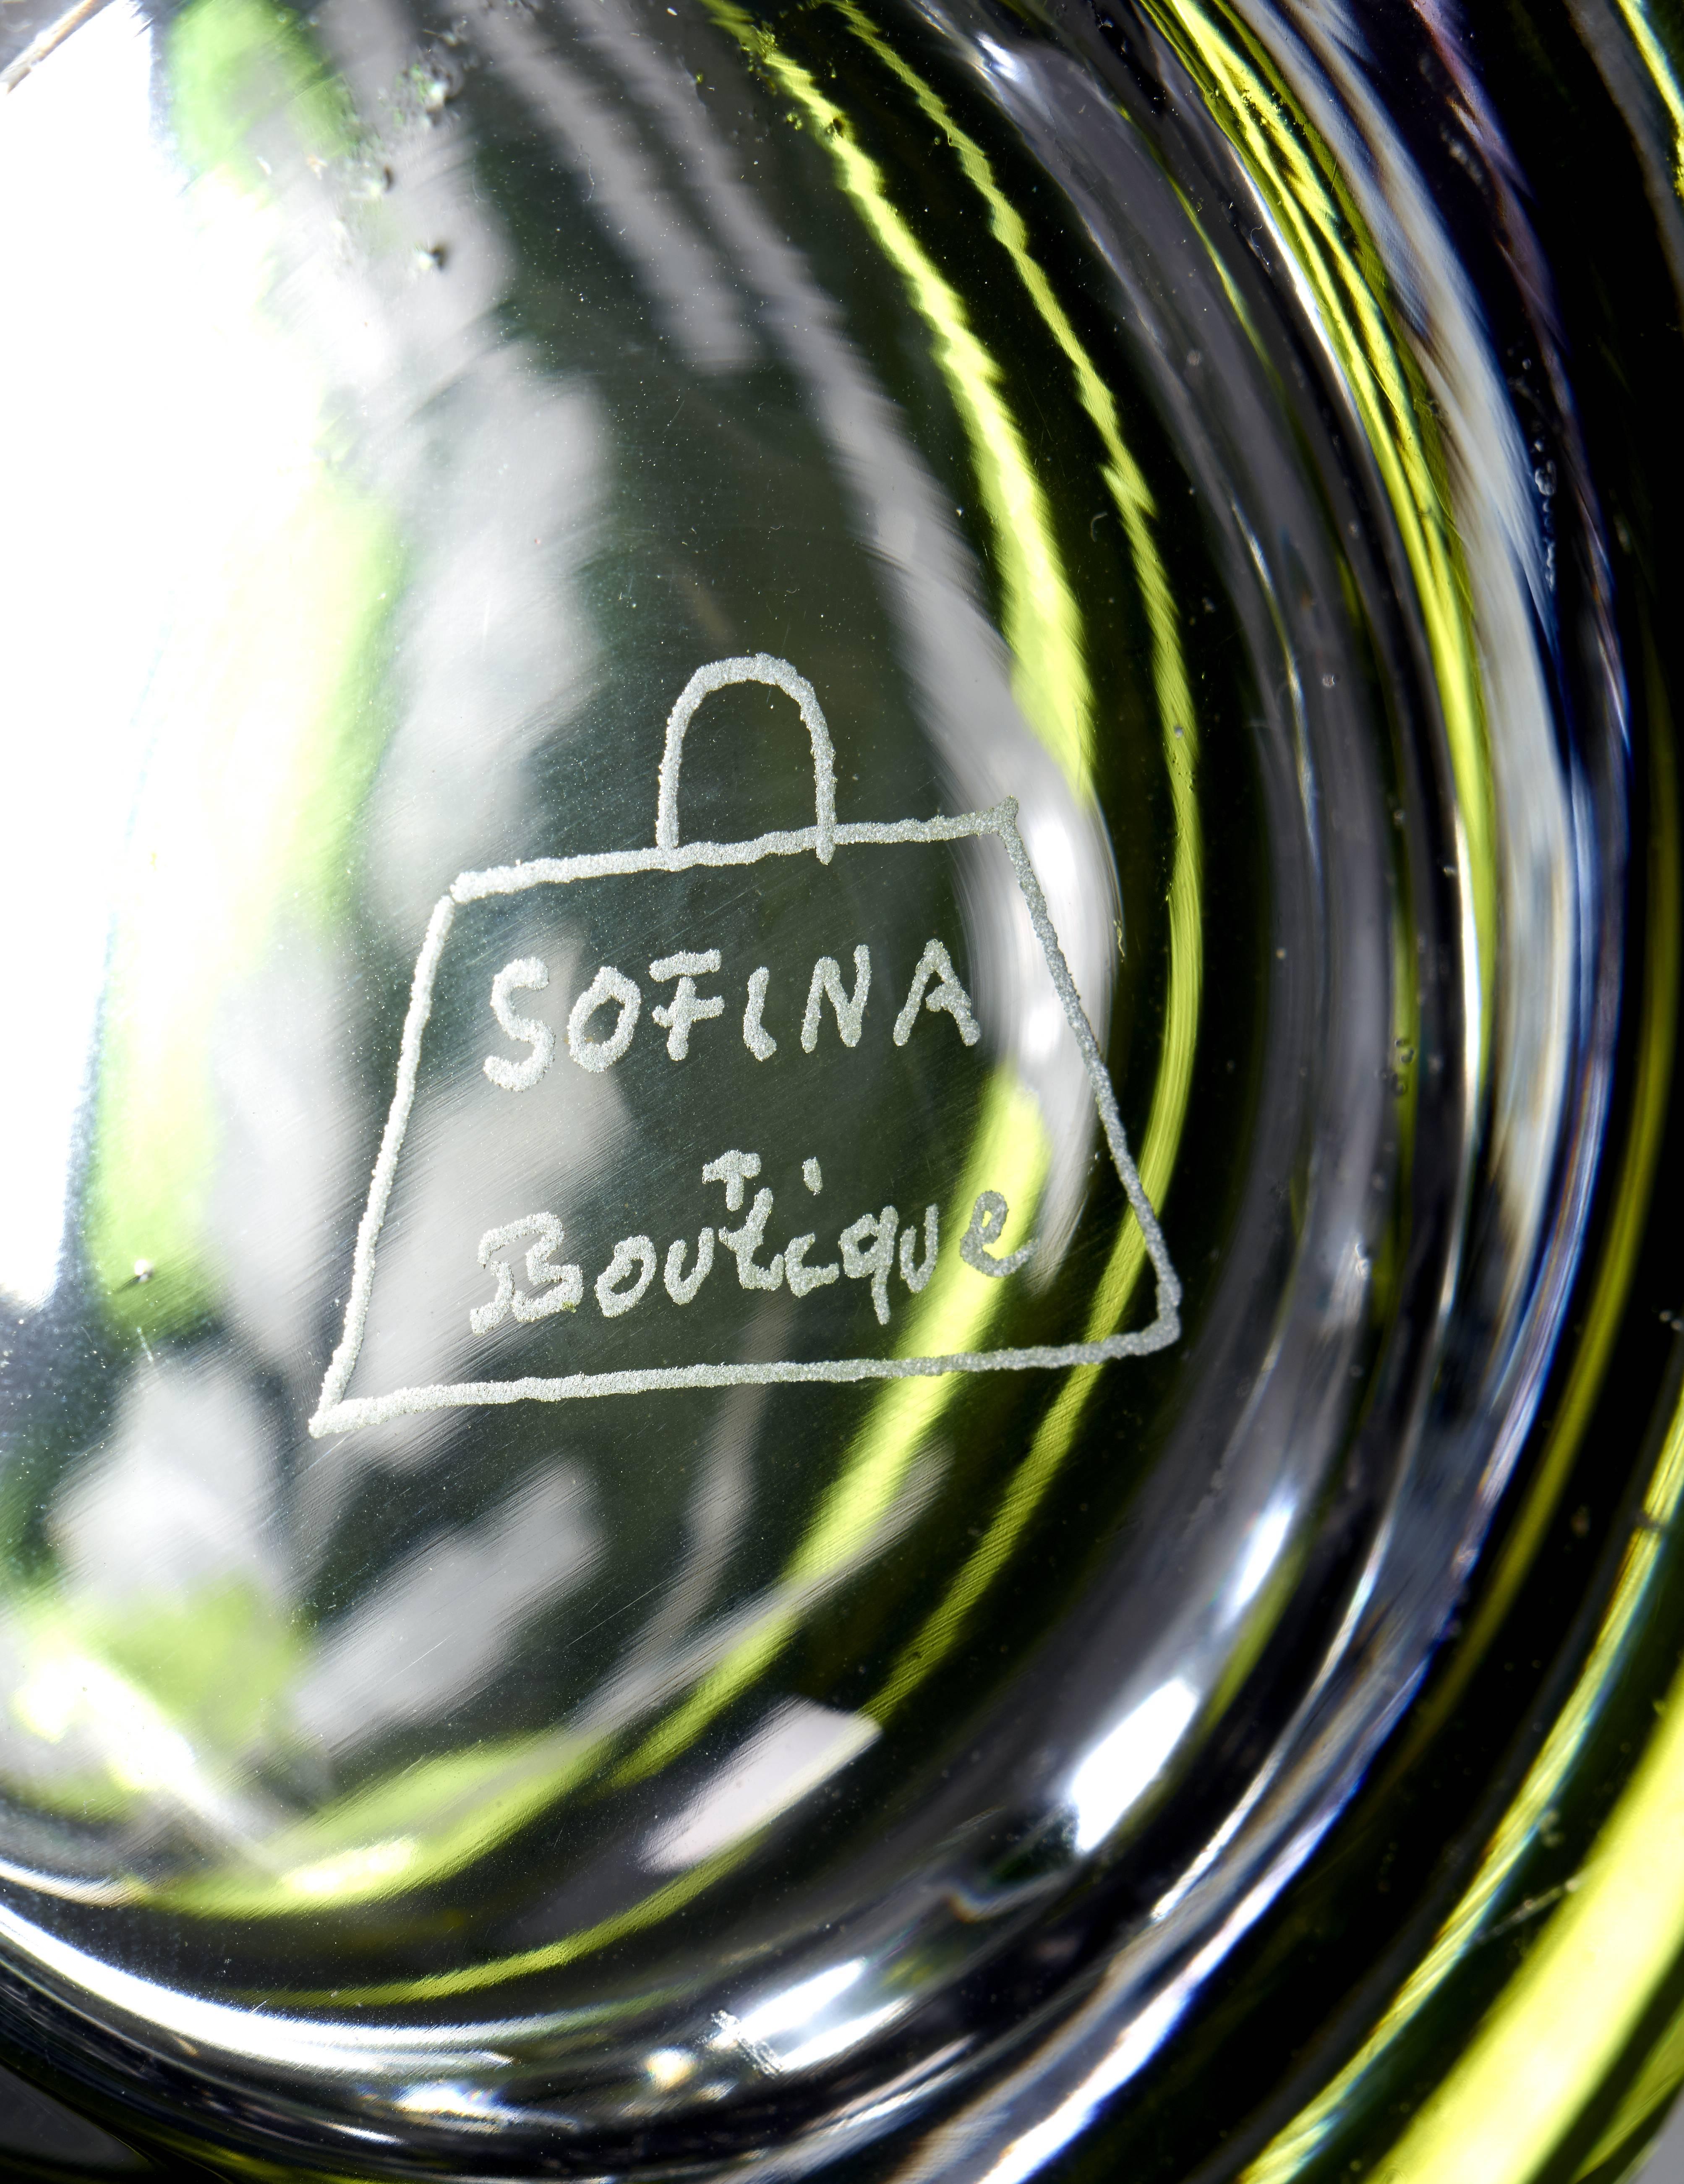 Über Sofina Crystal:
Diese mundgeblasene Kristallvase gehört zu einer Auswahl von Sofina Kristall, das in Bayern/Deutschland handgefertigt wird. Kann als Vase oder mit Kerzen verwendet werden. Die beiden auf Eichenblättern sitzenden Vögel sind